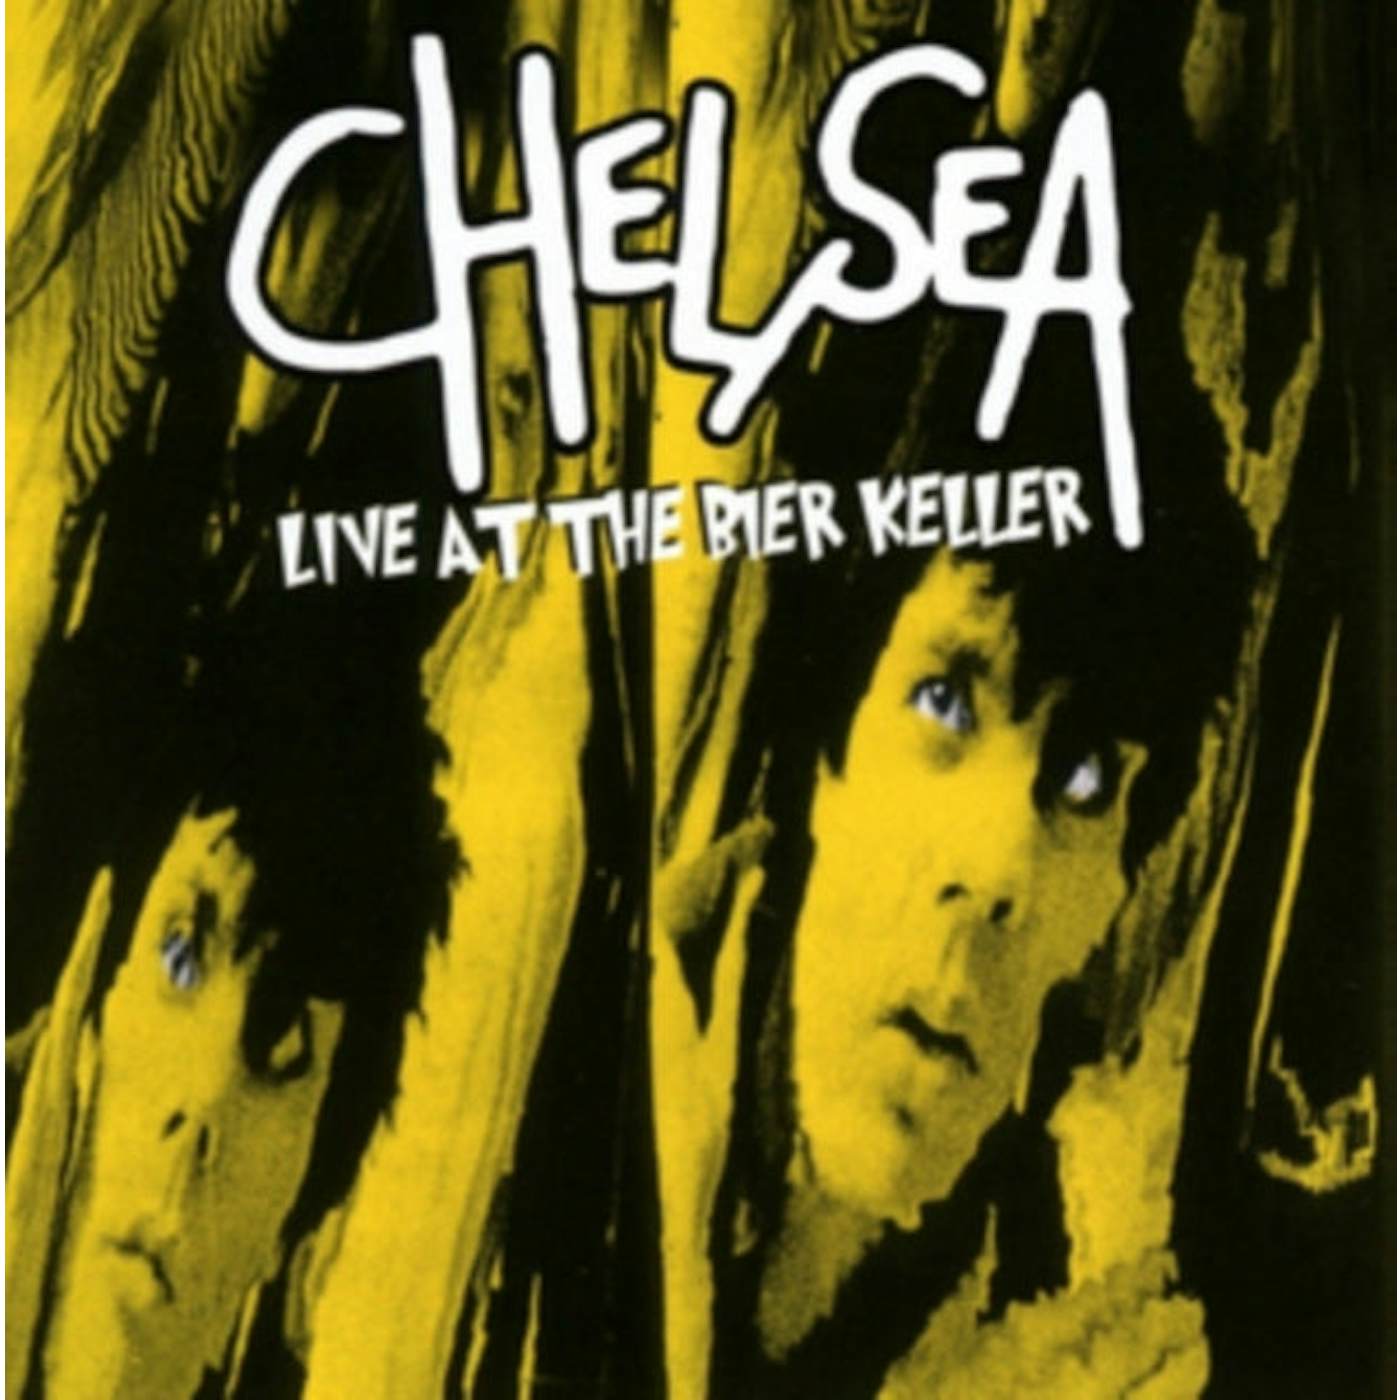 Chelsea CD - Live At The Bier Keller